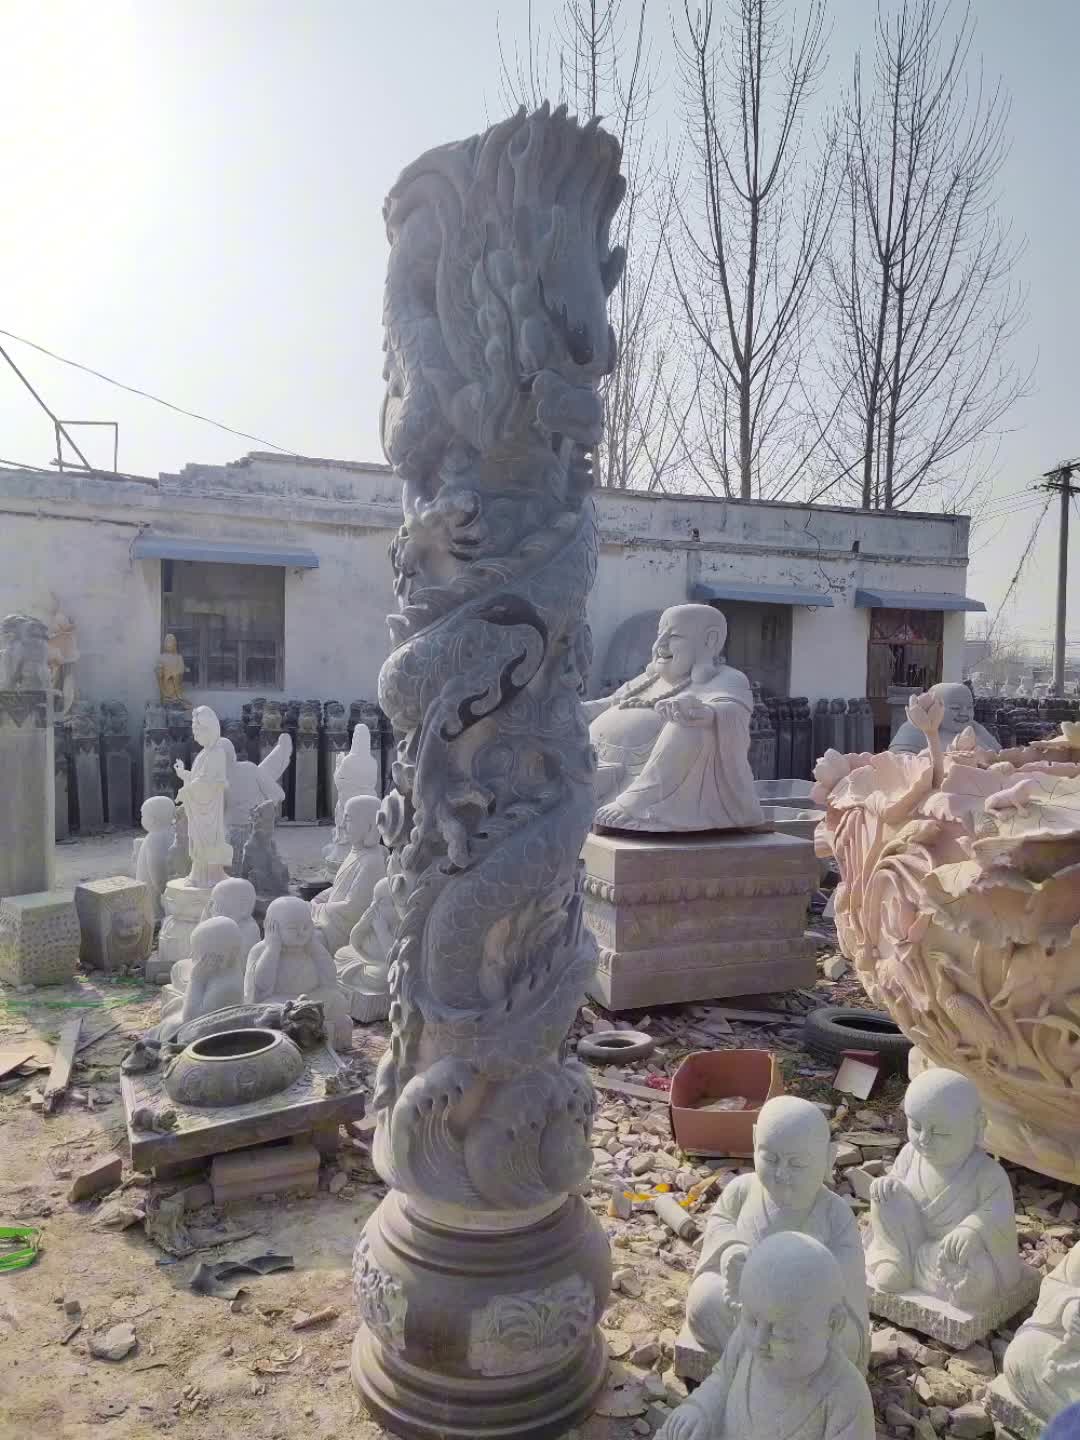 石雕龙柱雕刻厂家